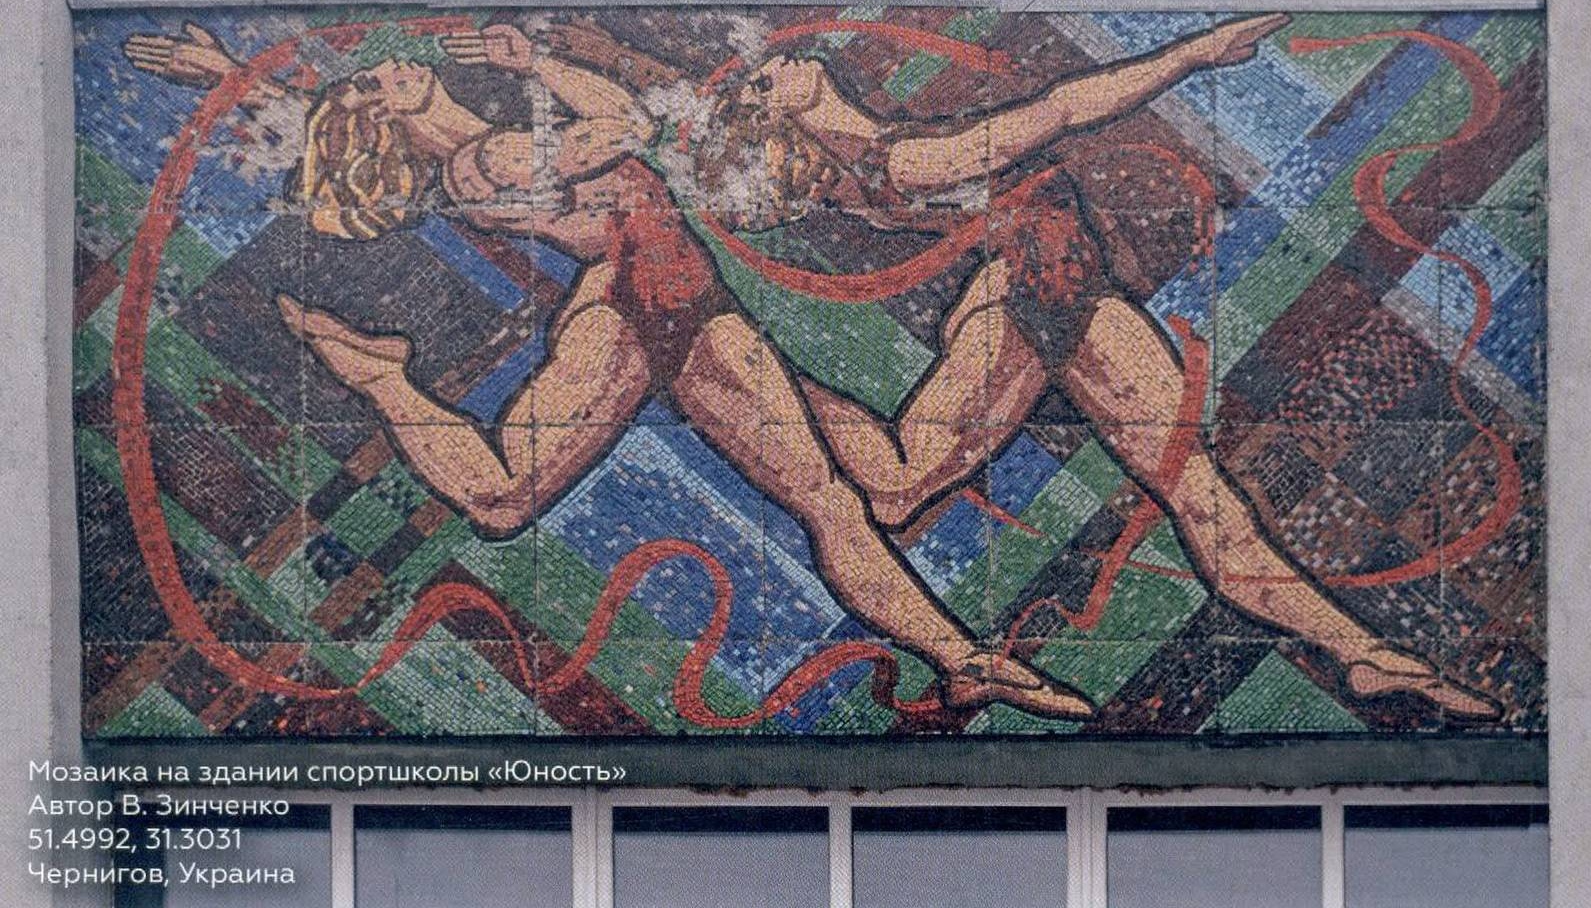 Бегуны. Мозаика на здании спортшколы в Чернигове, Украина. В. Зинченко. 